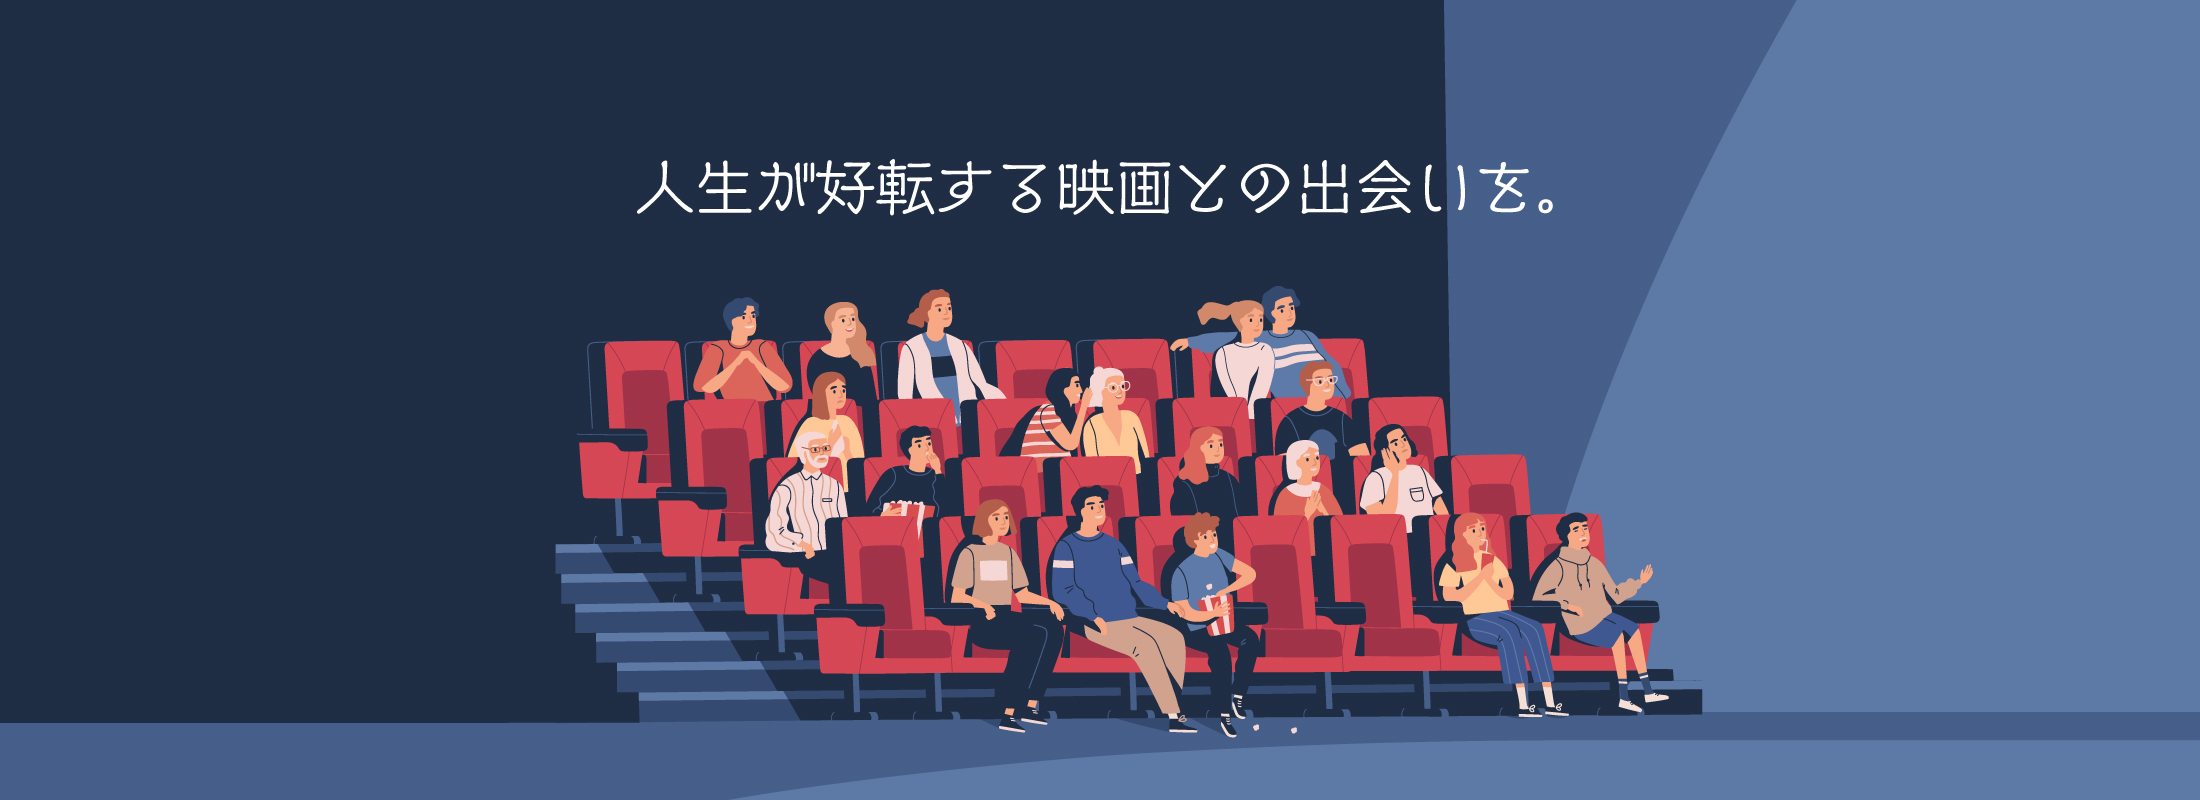 映画館のイラスト「人生が好転する映画との出会いを。」